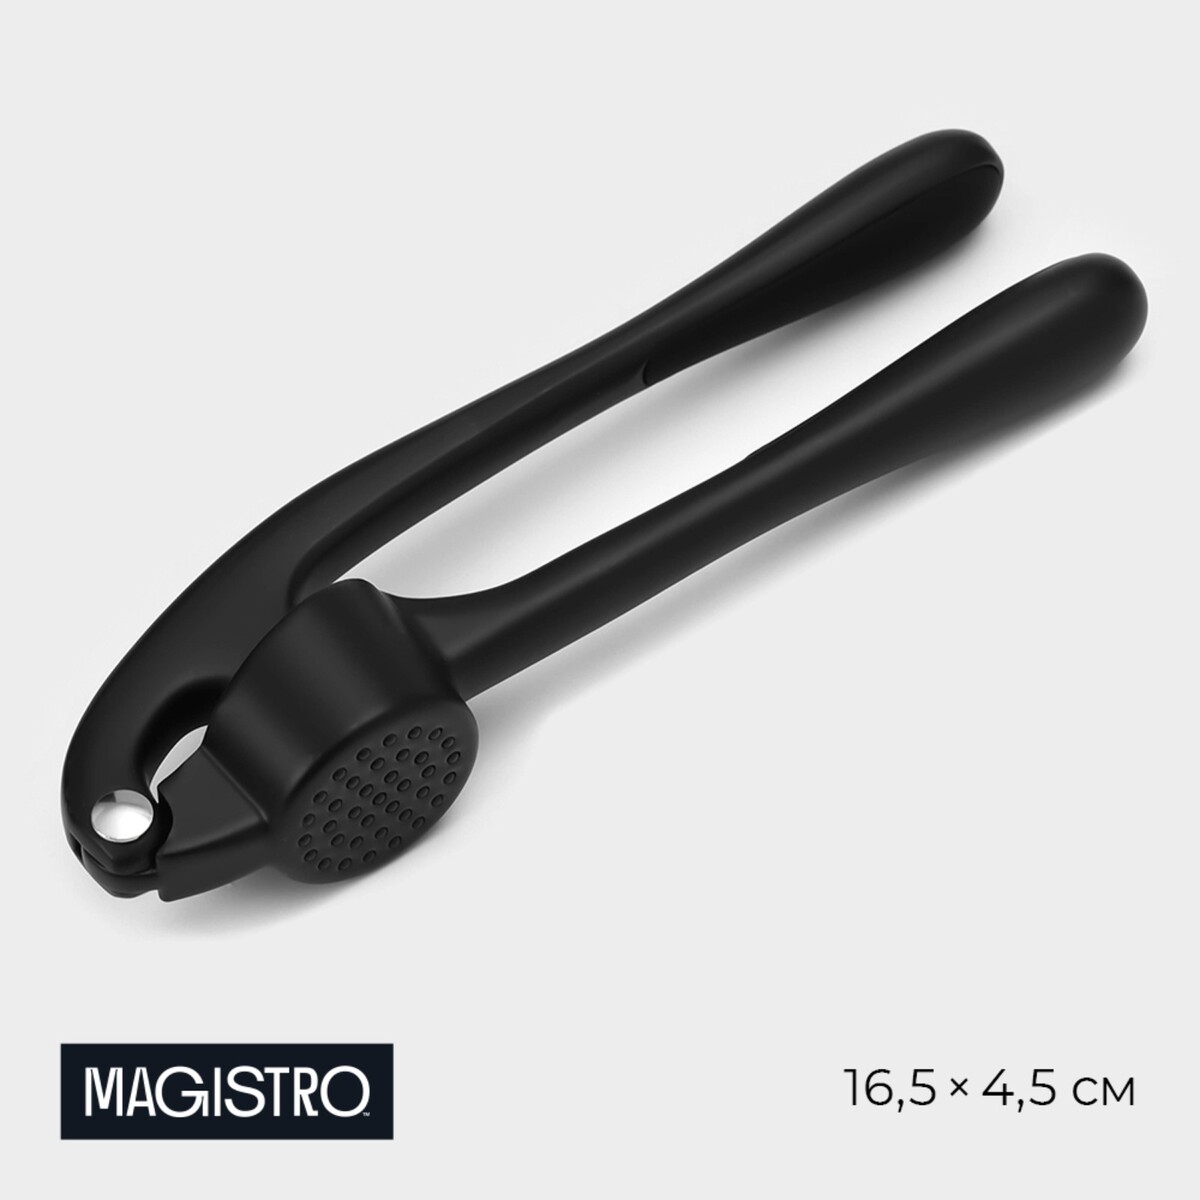 Пресс для чеснока magistro vantablack, 16,5×4,5 см, цвет черный